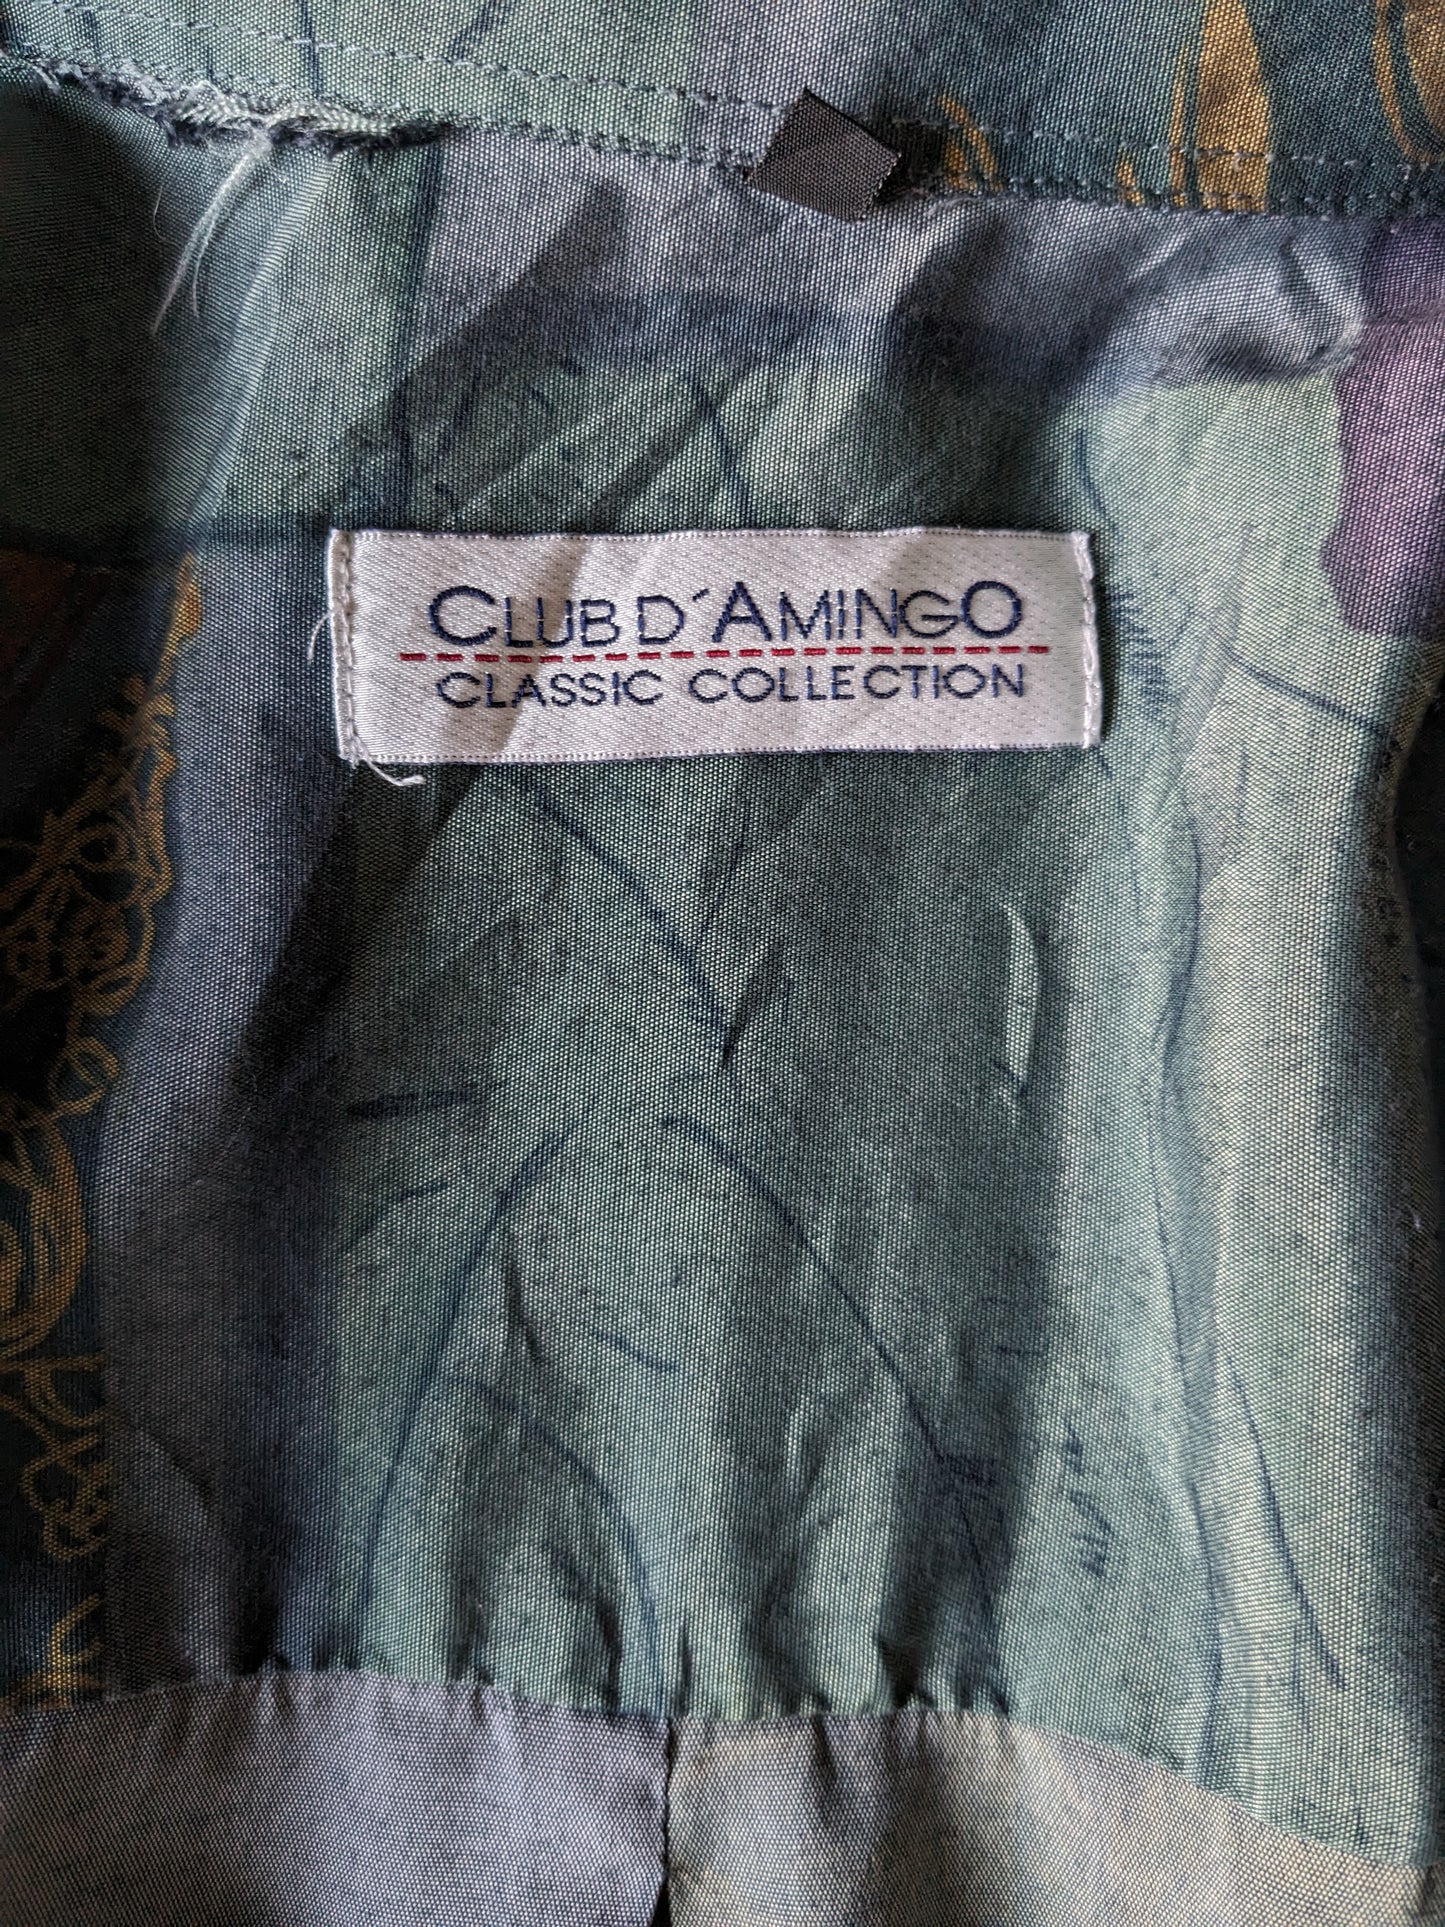 Vintage Club d'Amingo 90er Hemd. Grauer gelb lila grüner Druck. Größe xl.